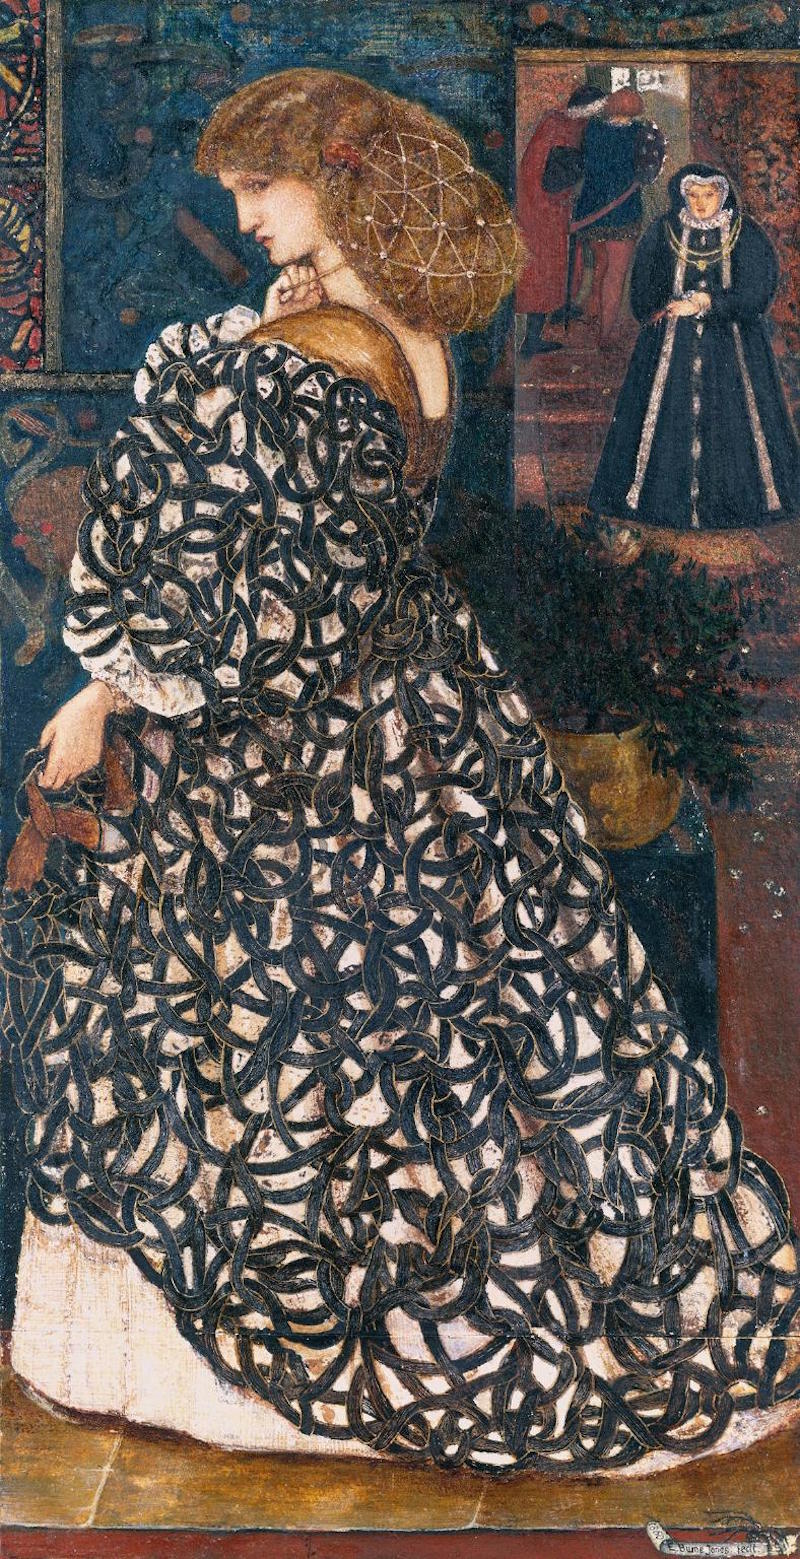 シドニア・フォン・ボルケ1560 by Edward Burne-Jones - 1860 - 33.3 x 17.1 cm 